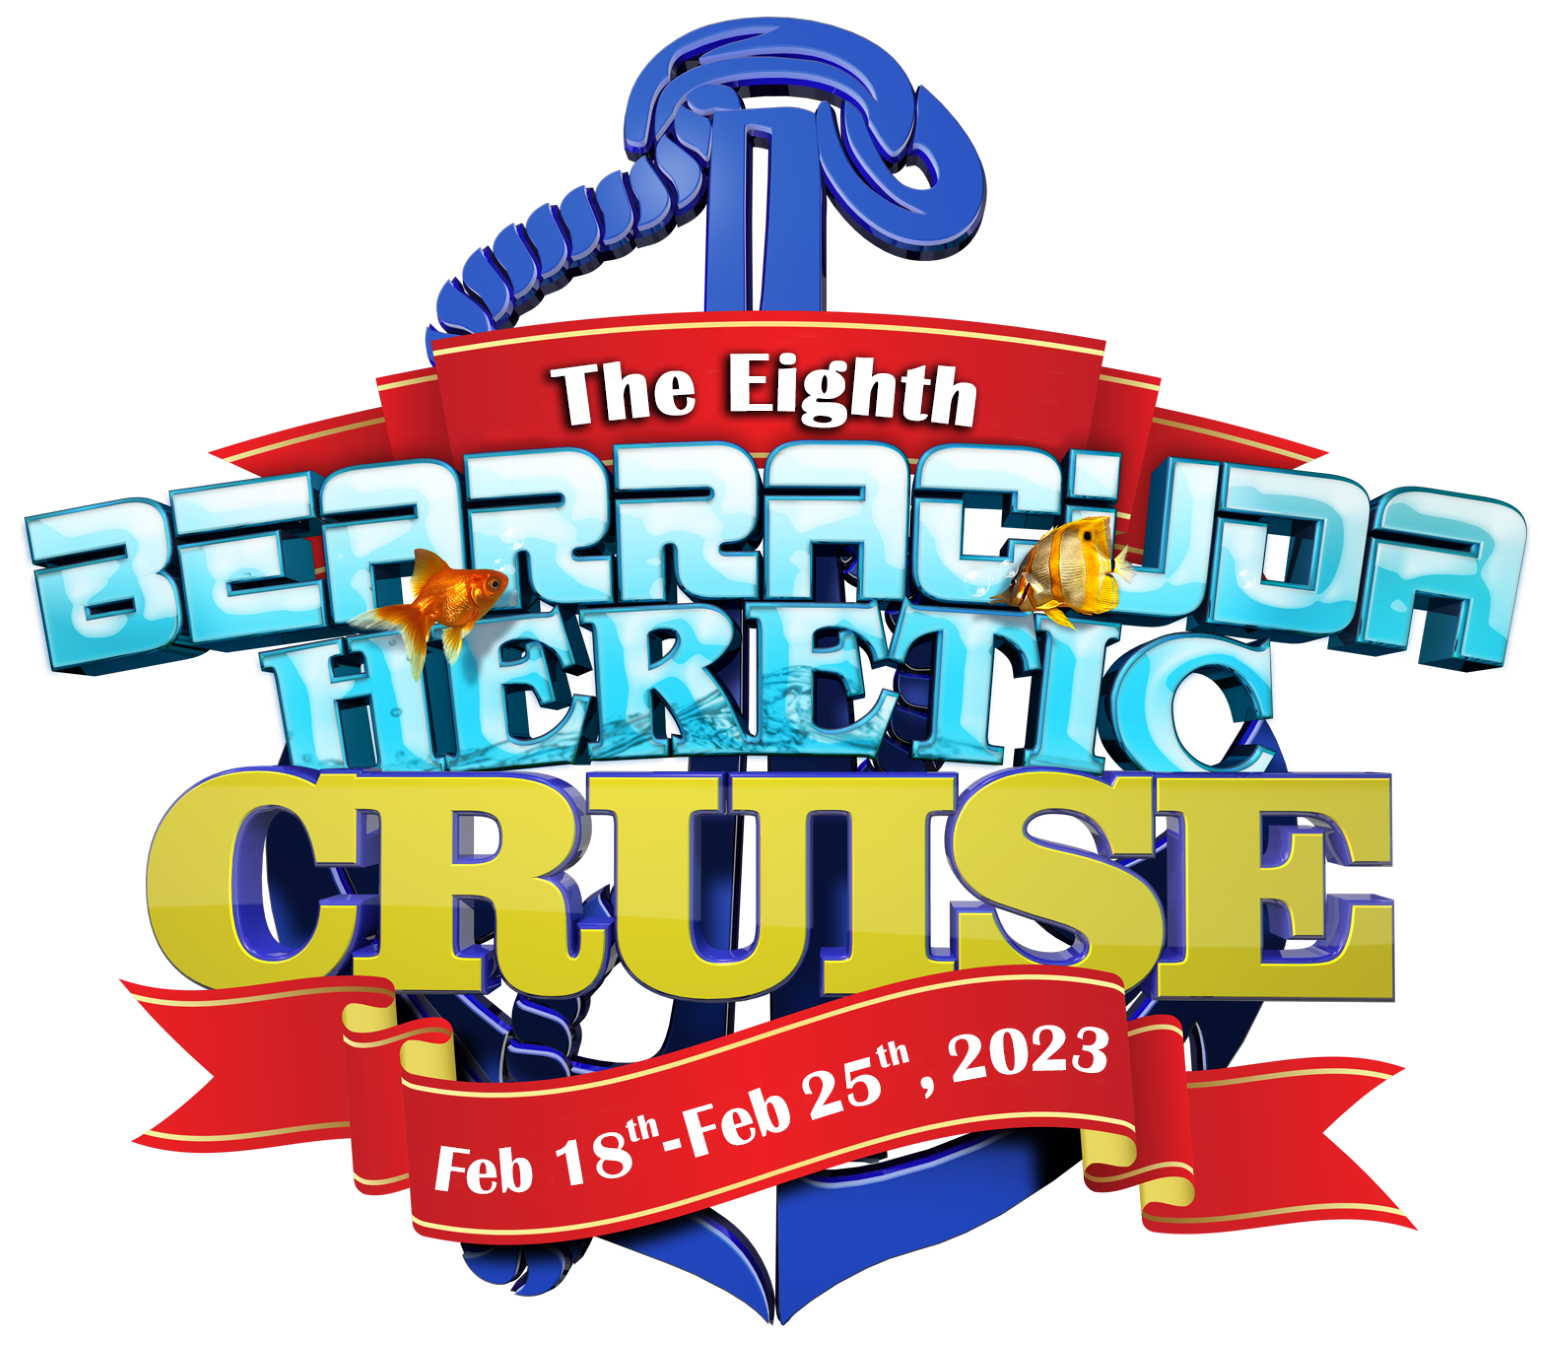 The Bearracuda Heretic Cruise | Feb 18th - Feb 25th, 2023